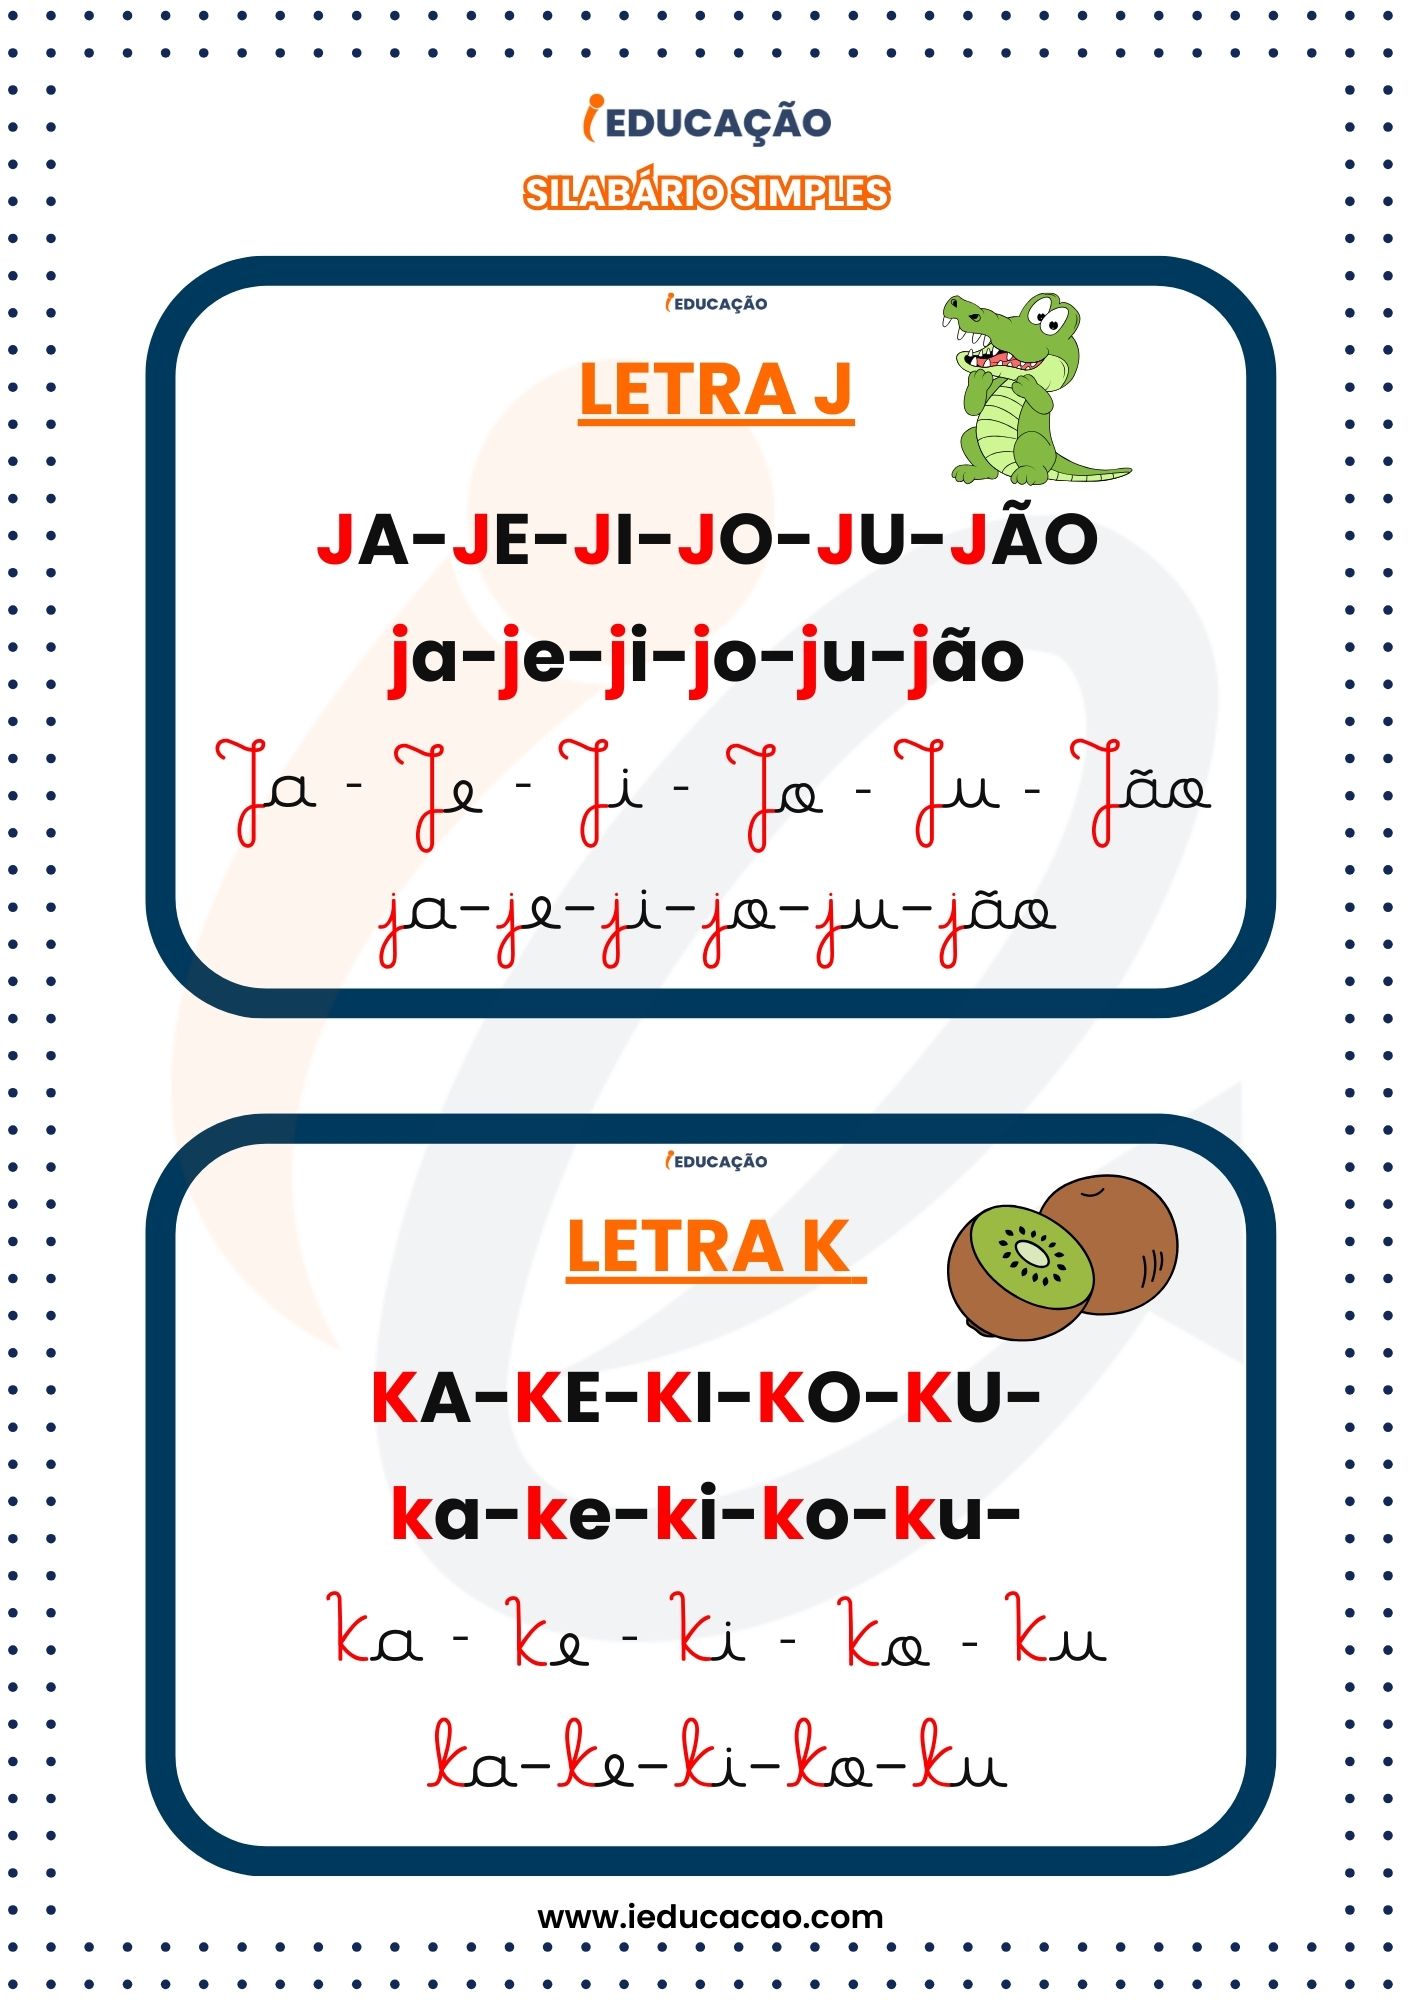 Silabário Simples Quatros Tipos de Letras j e k